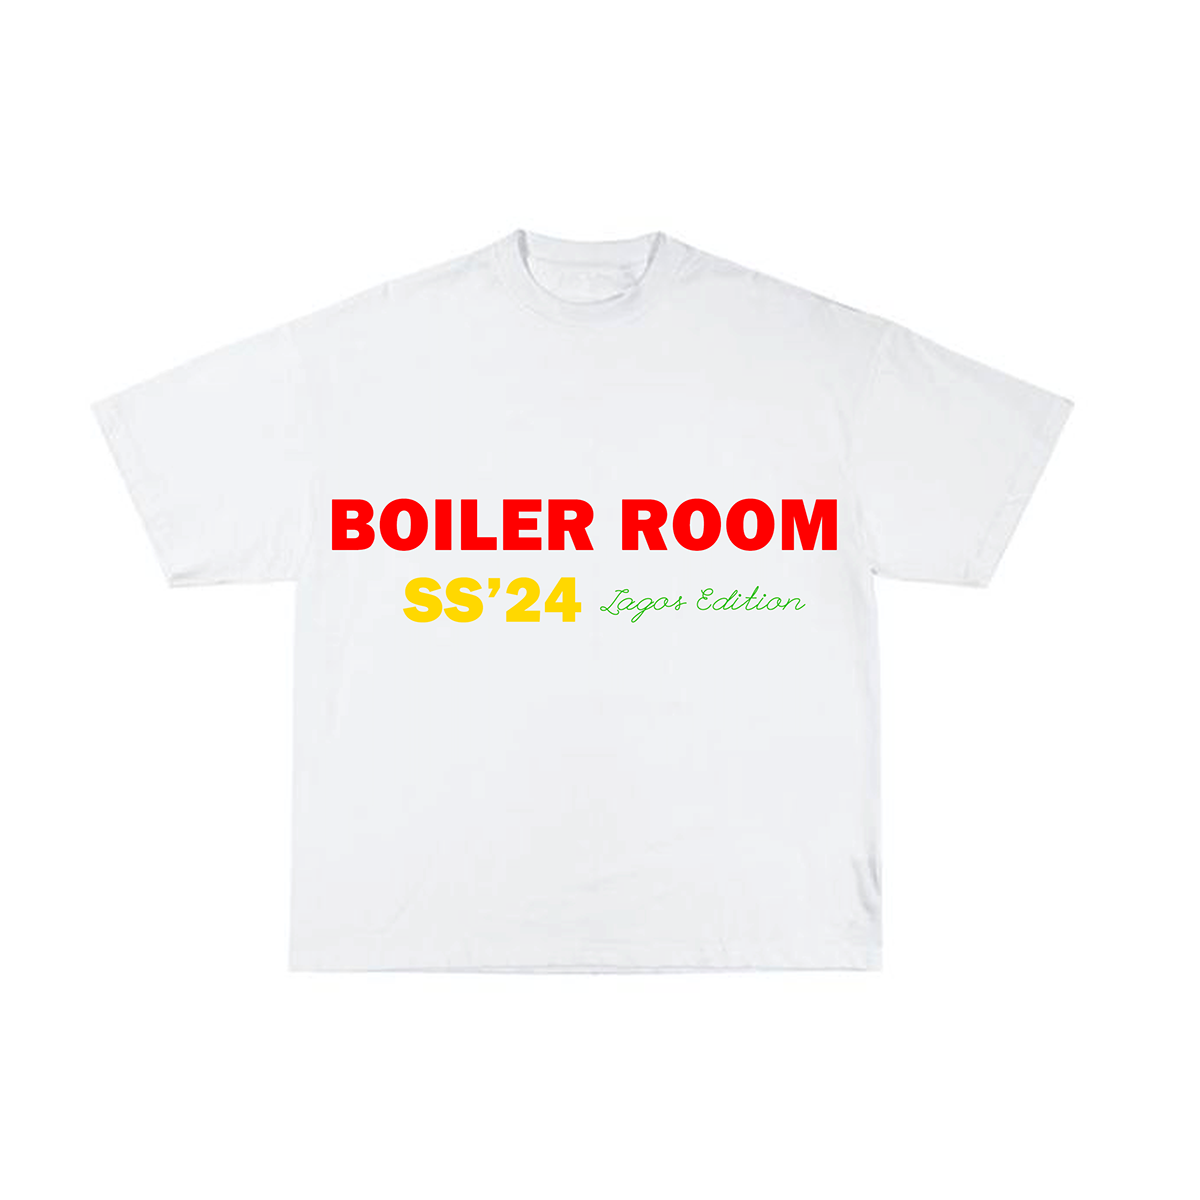 boiler room concert shows parties T-Shirt Design rave graphic design  ILLUSTRATION  dj